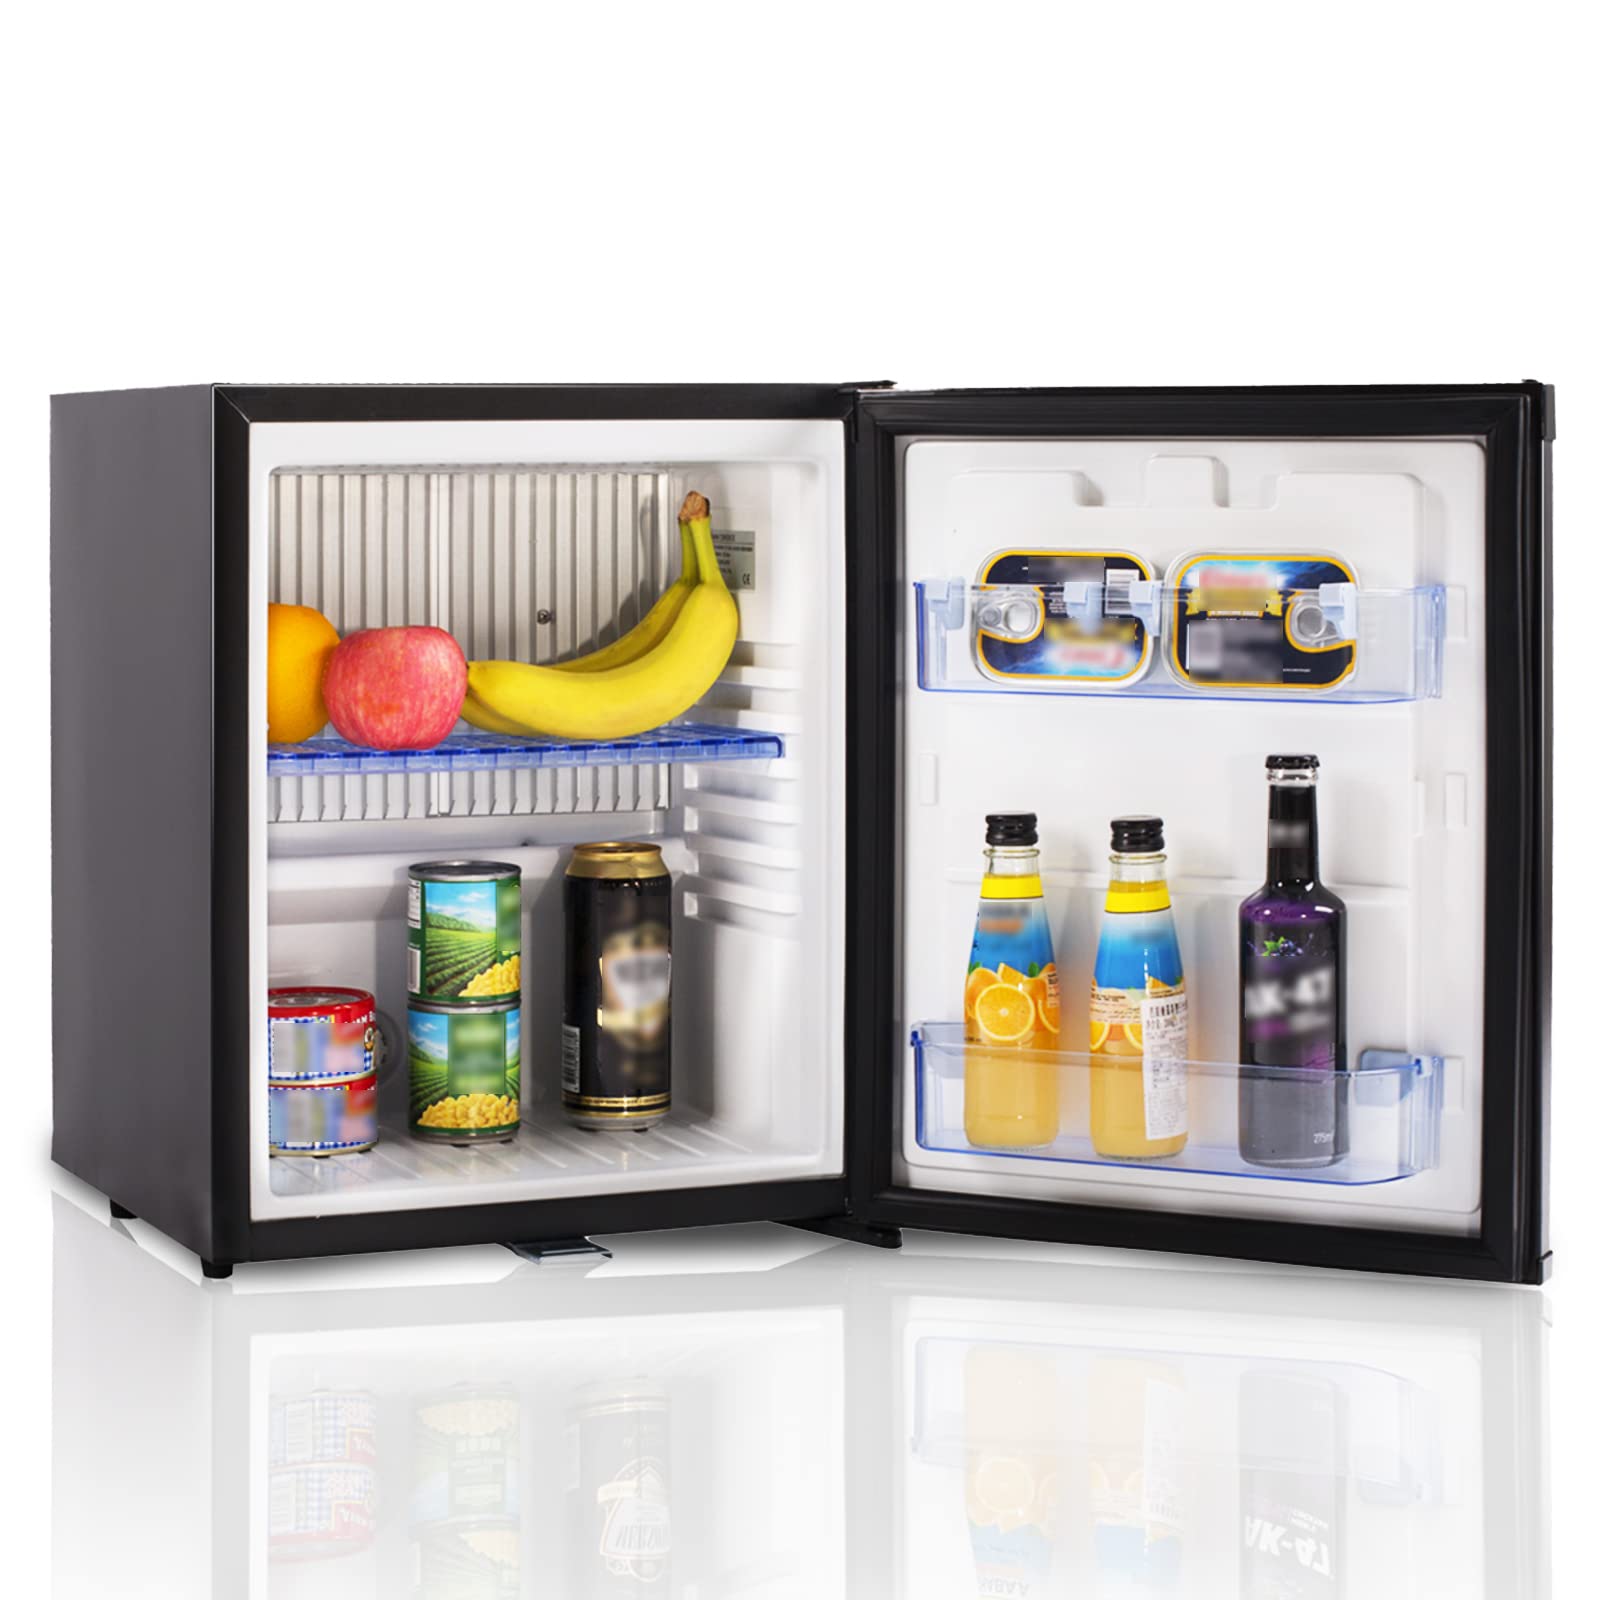 SMAD Mini Réfrigérateur - 30L Réfrigérateur à absorption compact et polyvalent avec serrure pour la maison, l’hôtel, le camping-car, le camping - AC/DC, 0-10℃, refroidissement silencieux, écologique, porte réversible